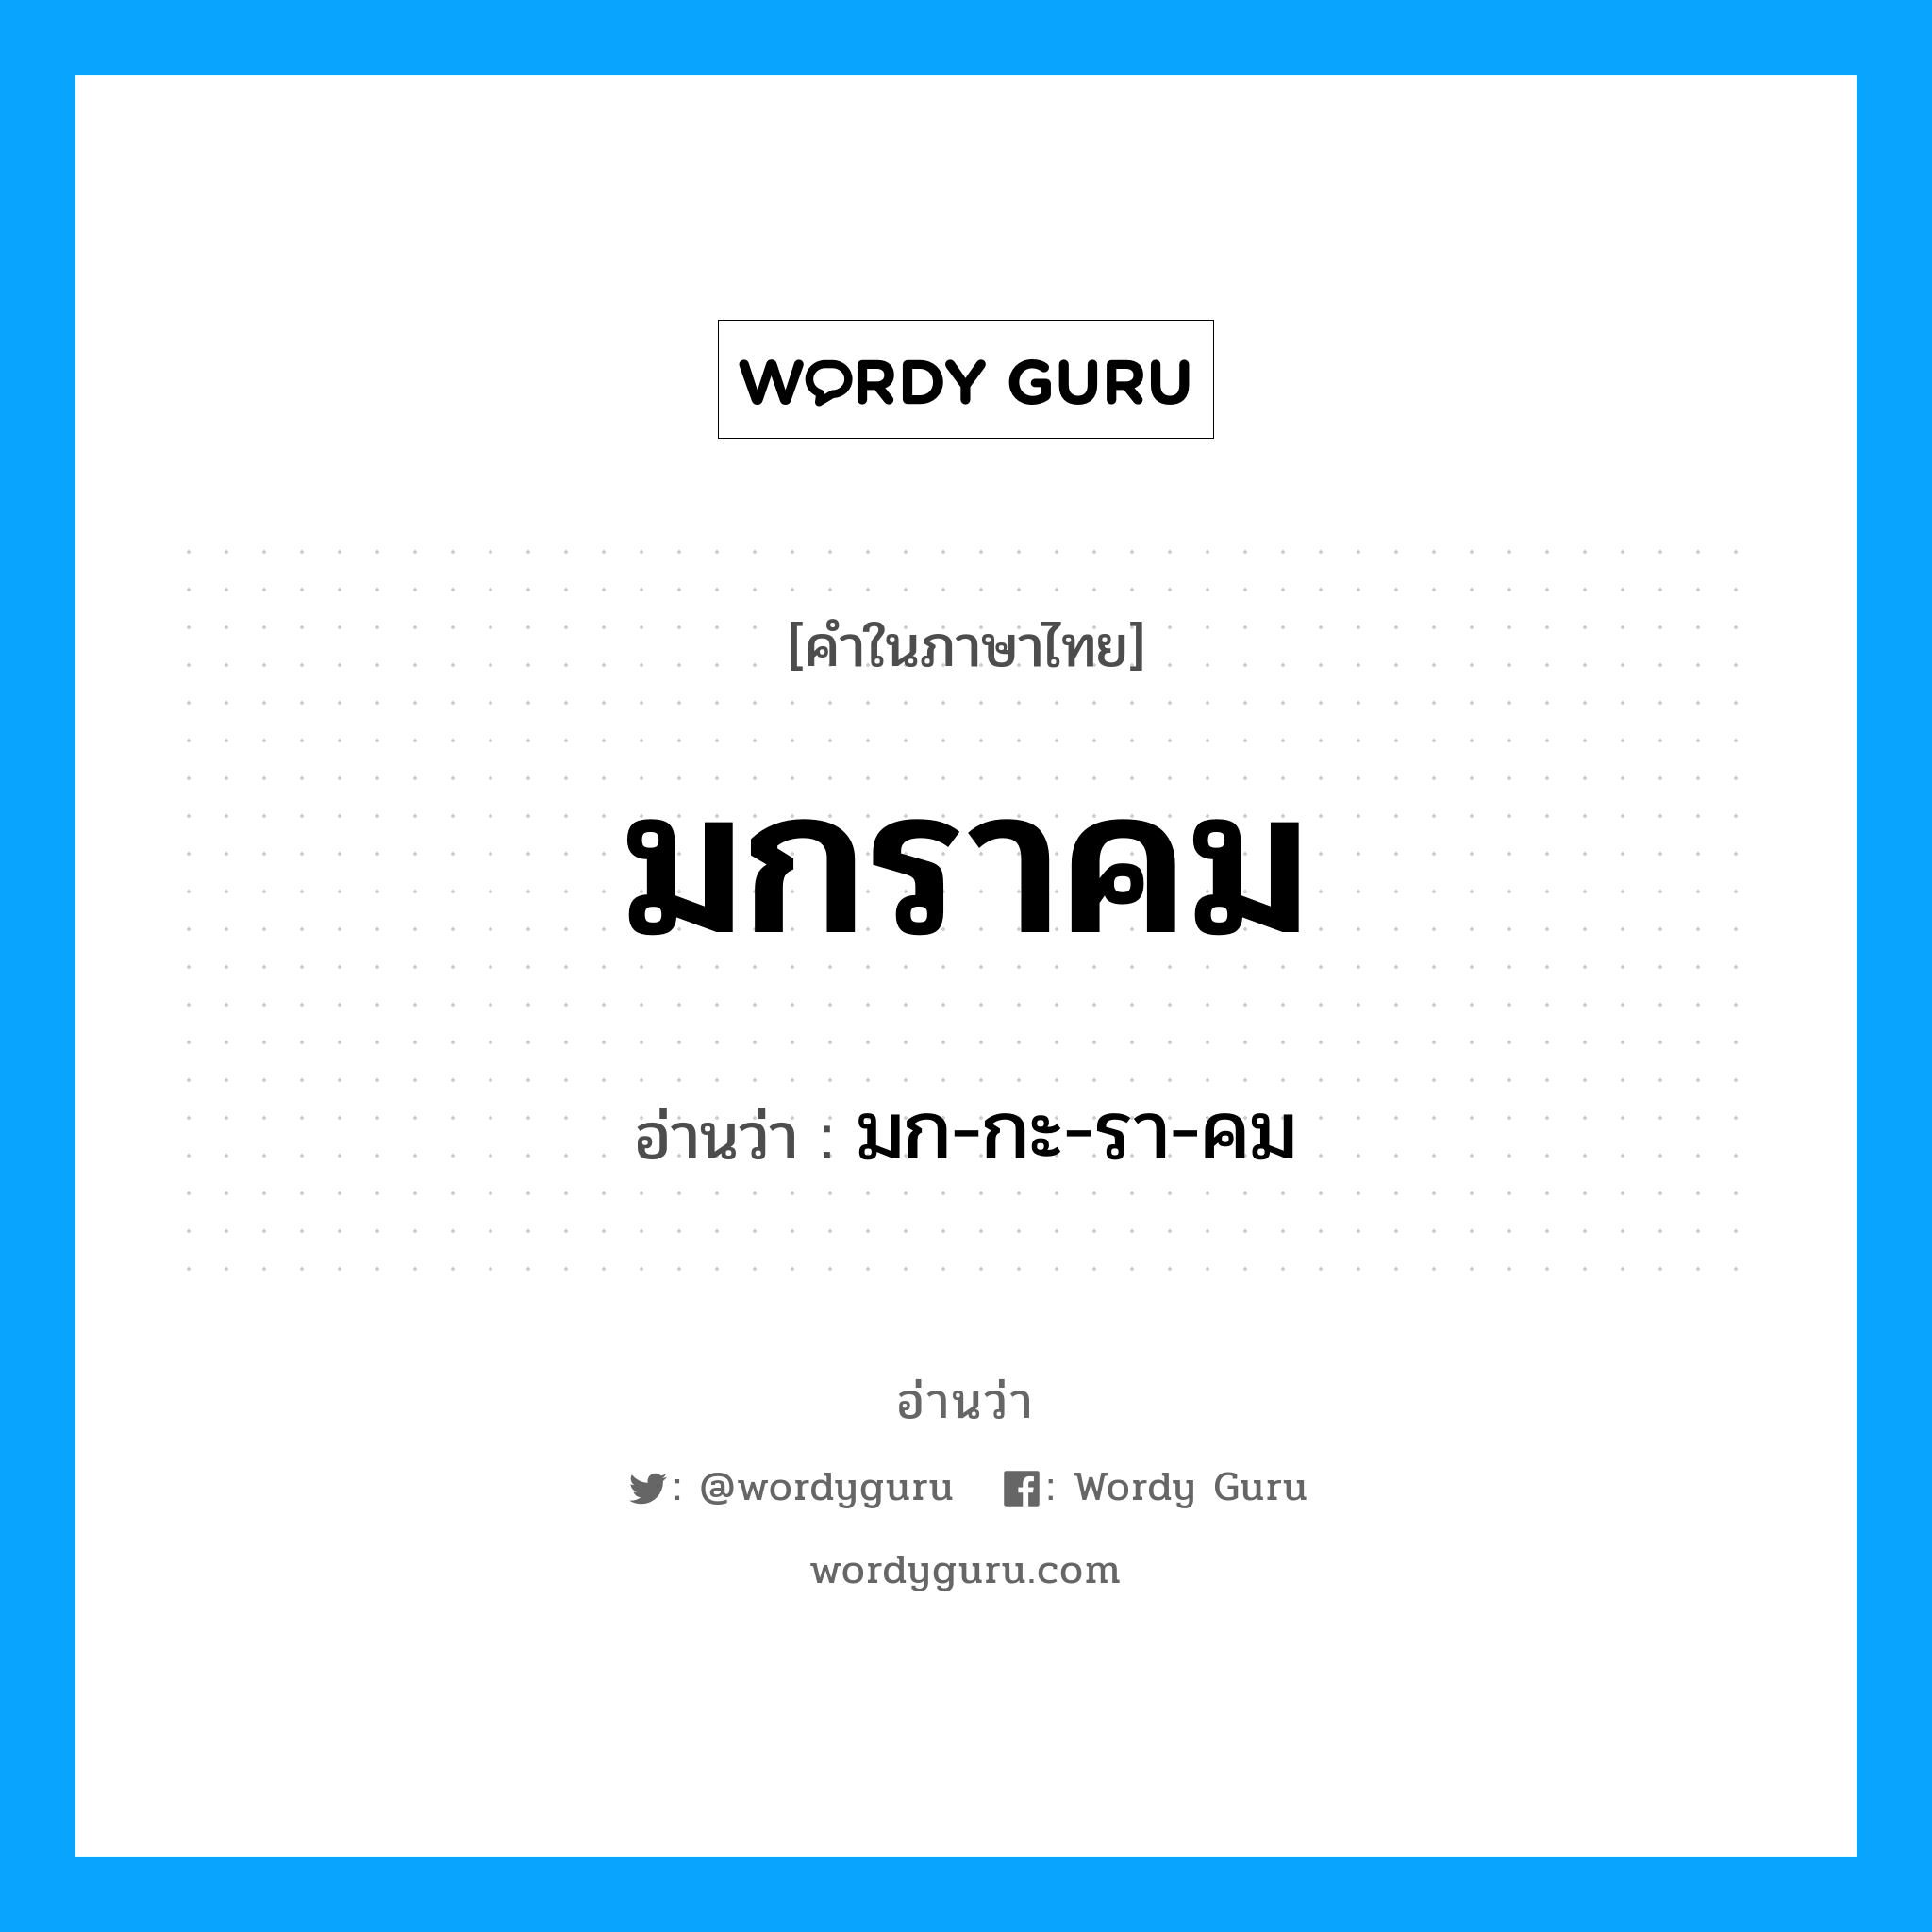 มก-กะ-รา-คม เป็นคำอ่านของคำไหน?, คำในภาษาไทย มก-กะ-รา-คม อ่านว่า มกราคม หมวด เดือน หมวด เดือน